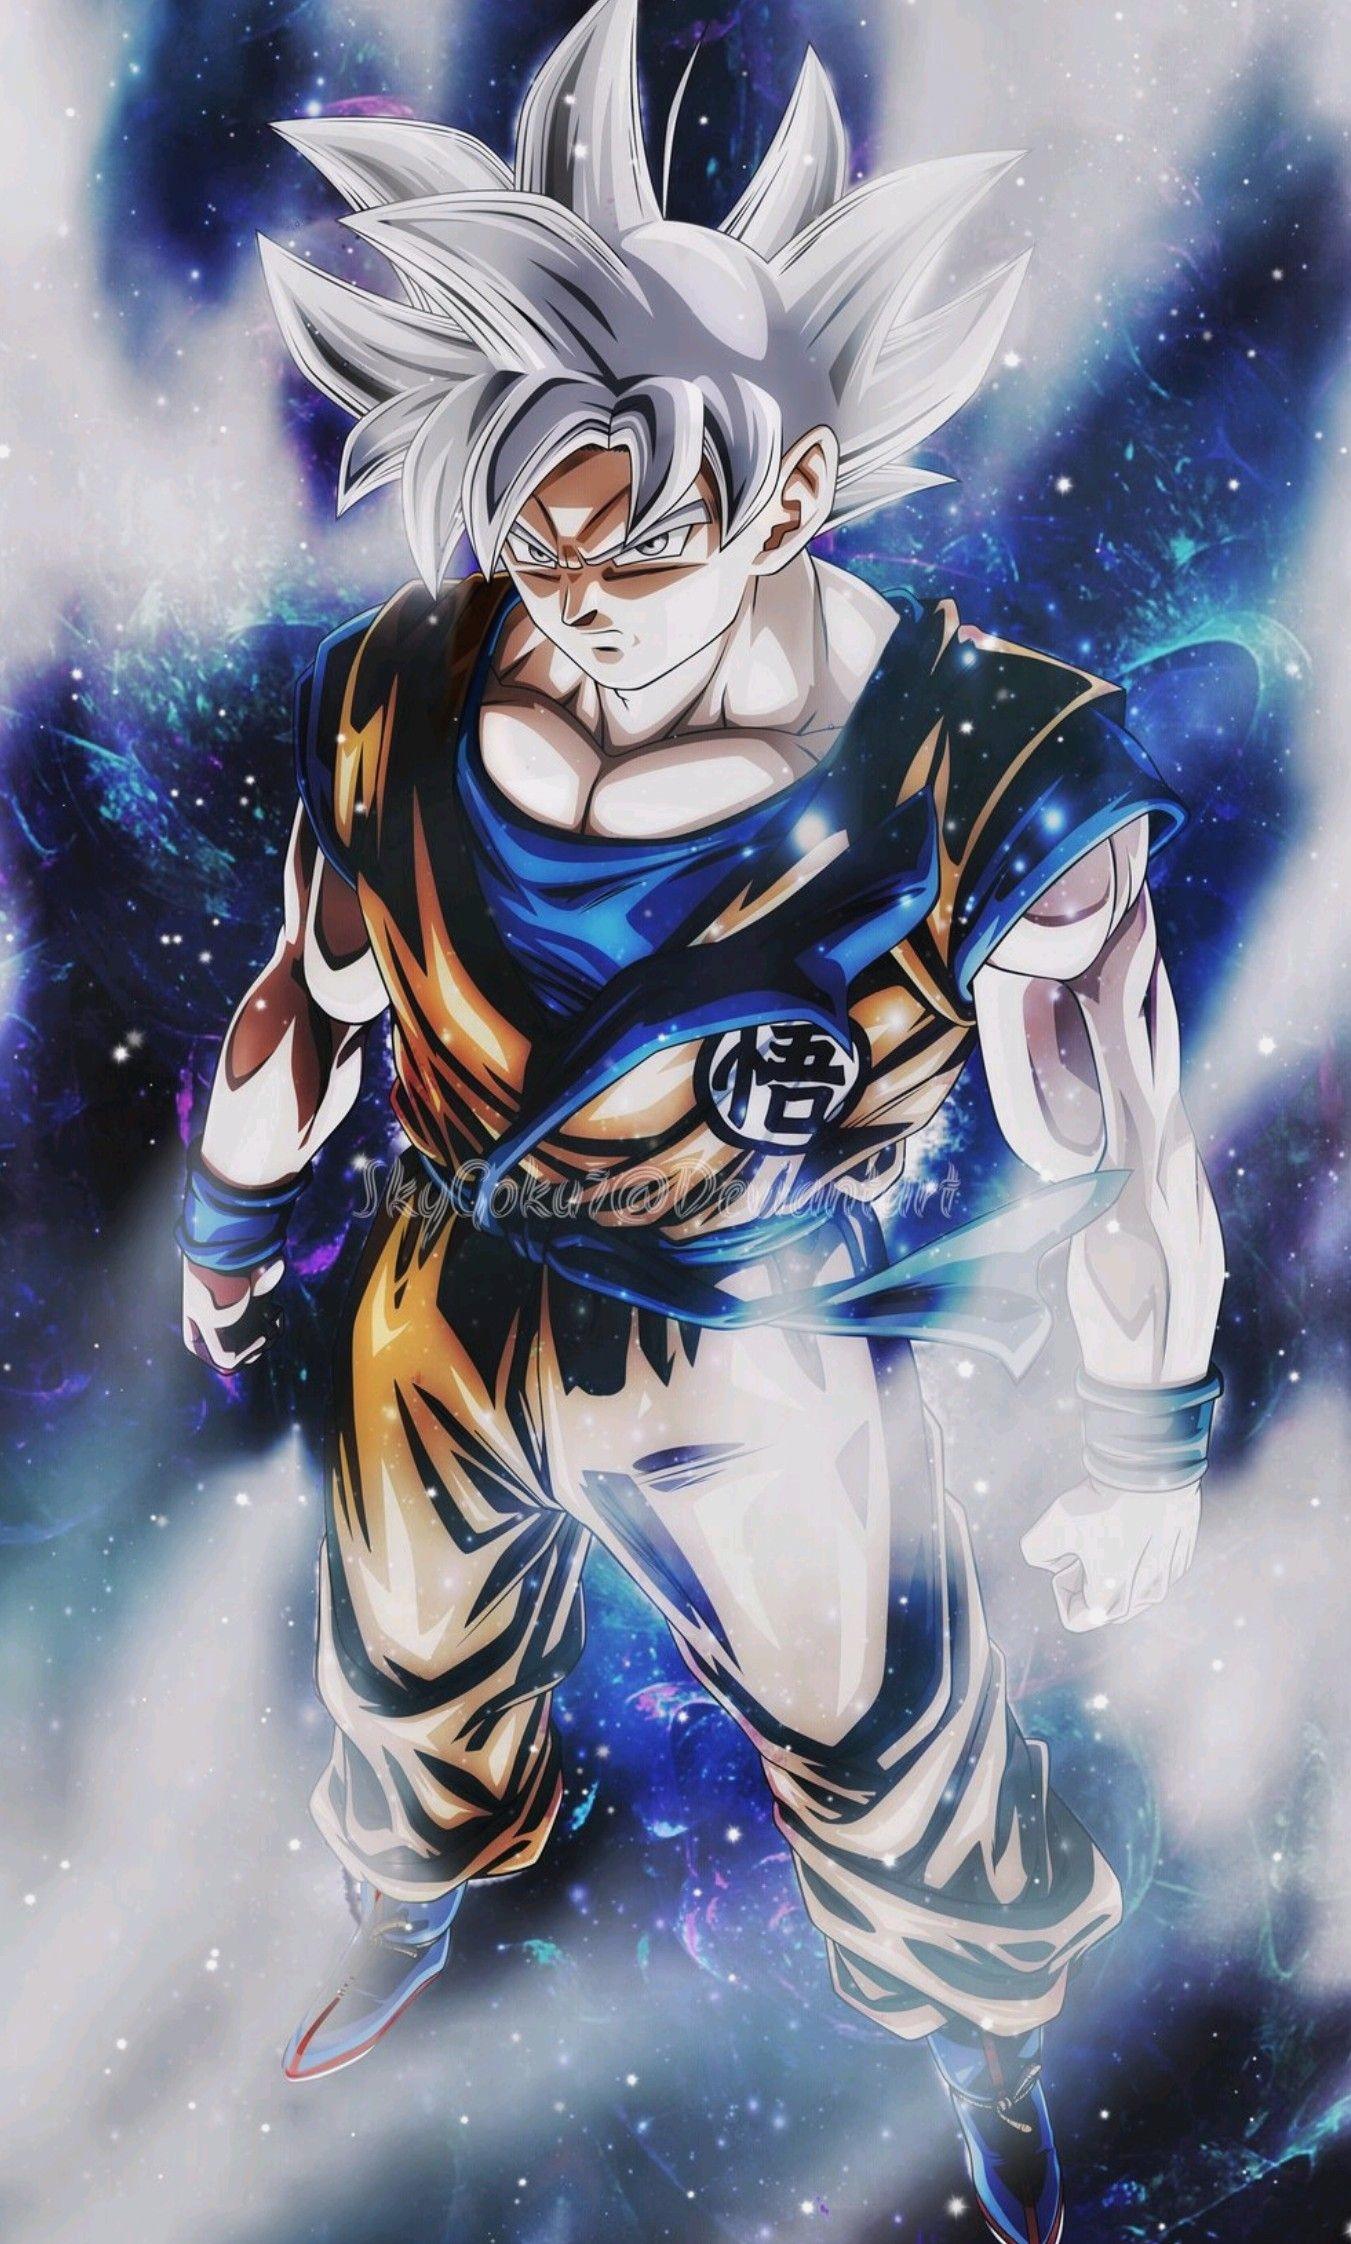 Goku Ultra Instinct Wallpaper 2 DB Legends by Maxiuchiha22 on DeviantArt